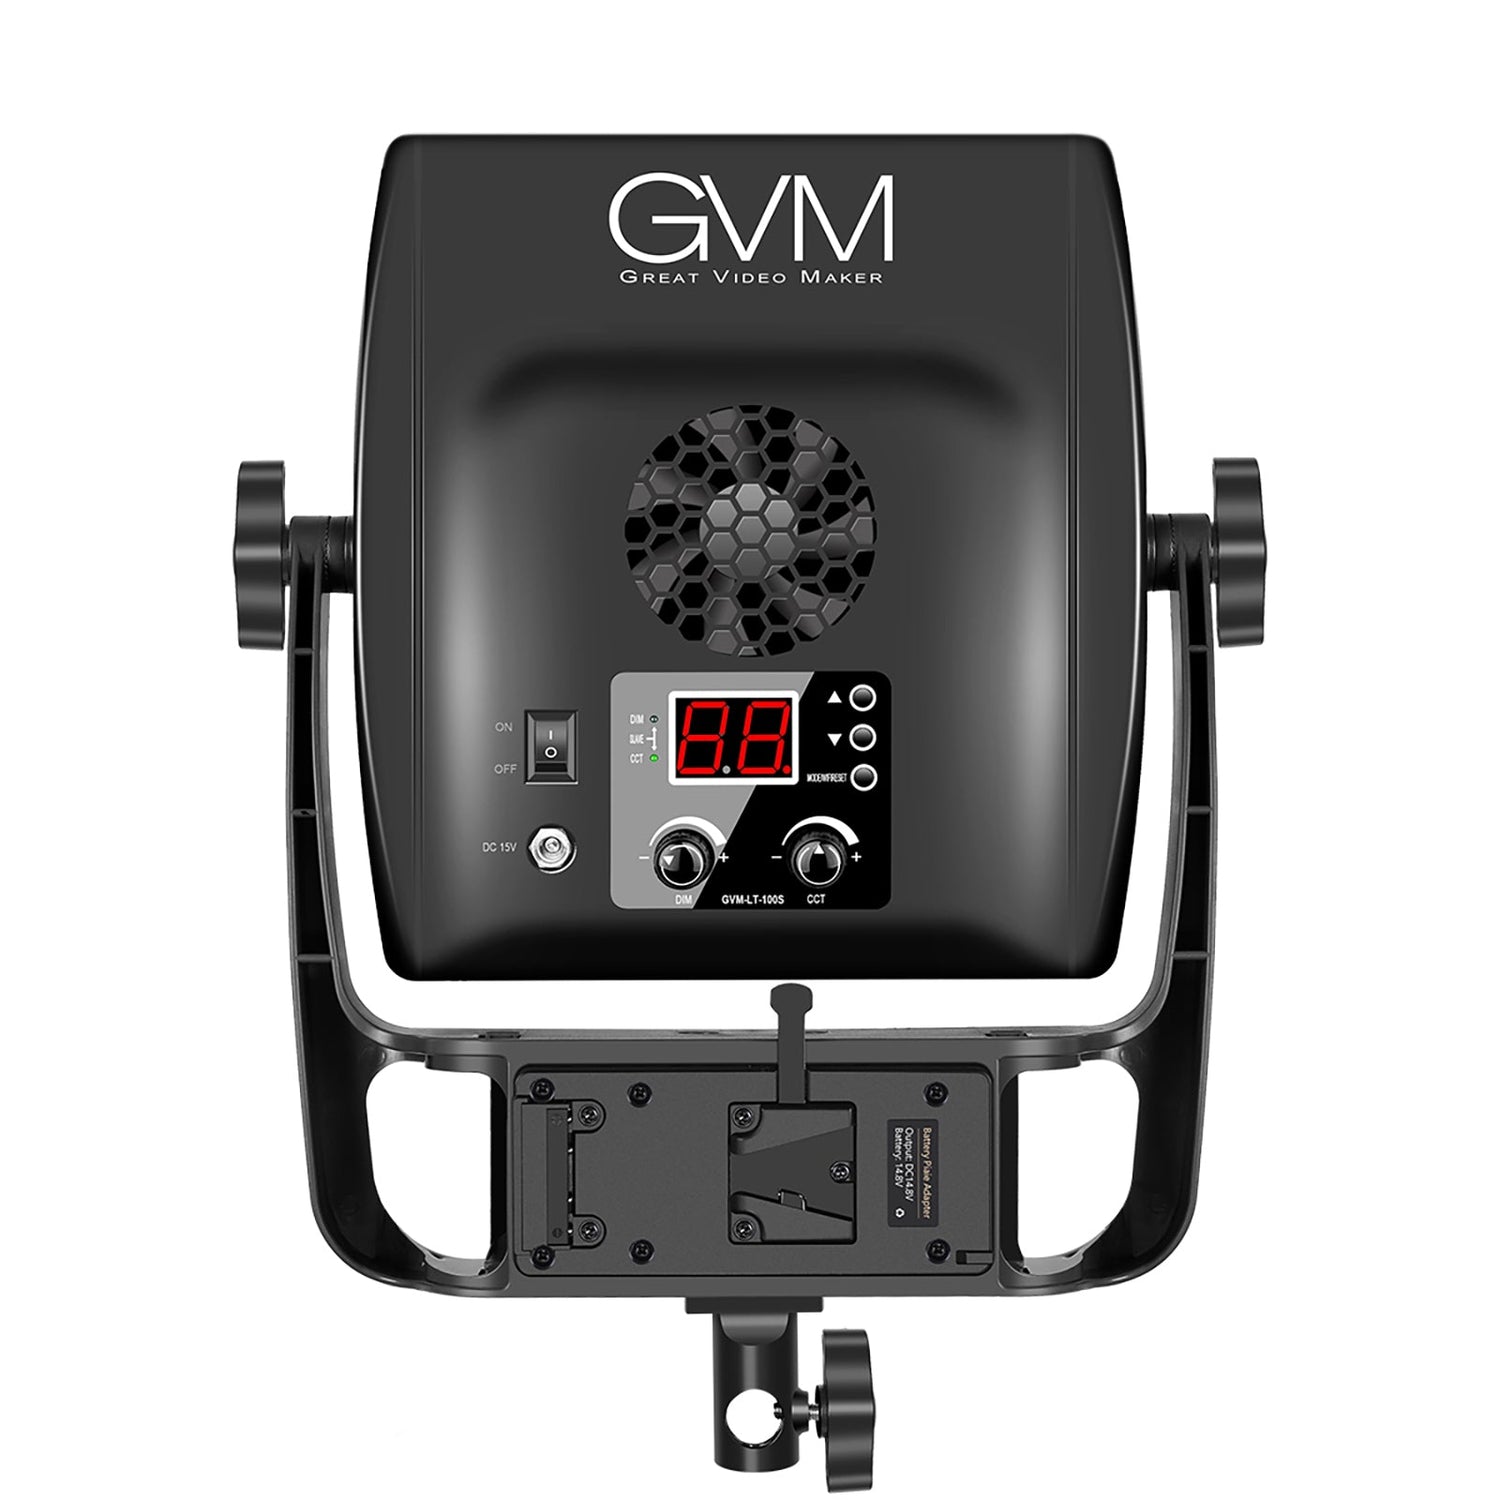 GVM-LT100S 100W High Power Bi-Color Lens Light beads Video Lighting Kit - GVMLED